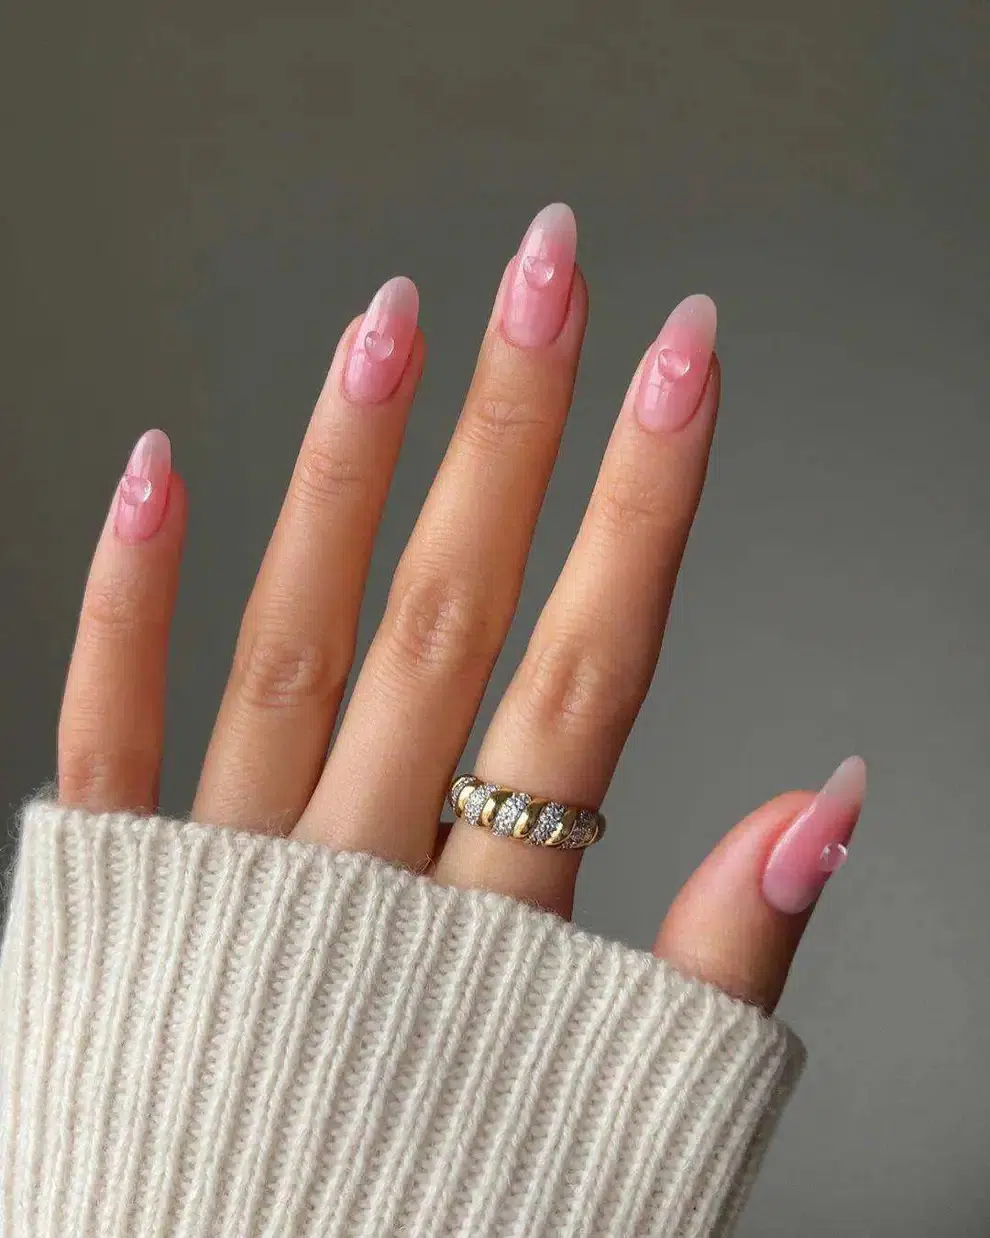 Розовый маникюр с выпуклым сердечком на длинных овальных ногтях